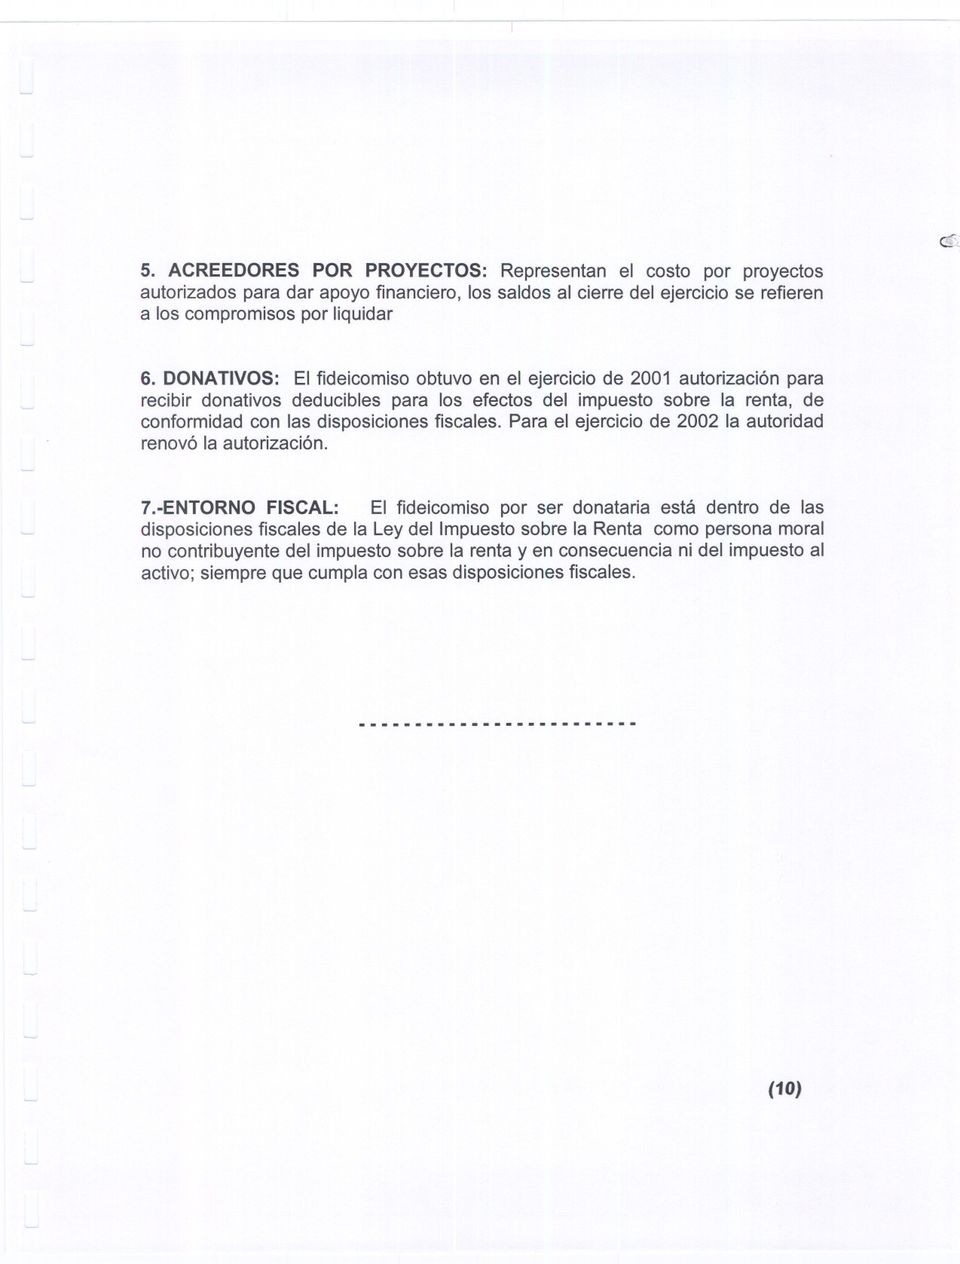 Para el ejercicio de 2002 la autoridad renovó la autorización. 7.